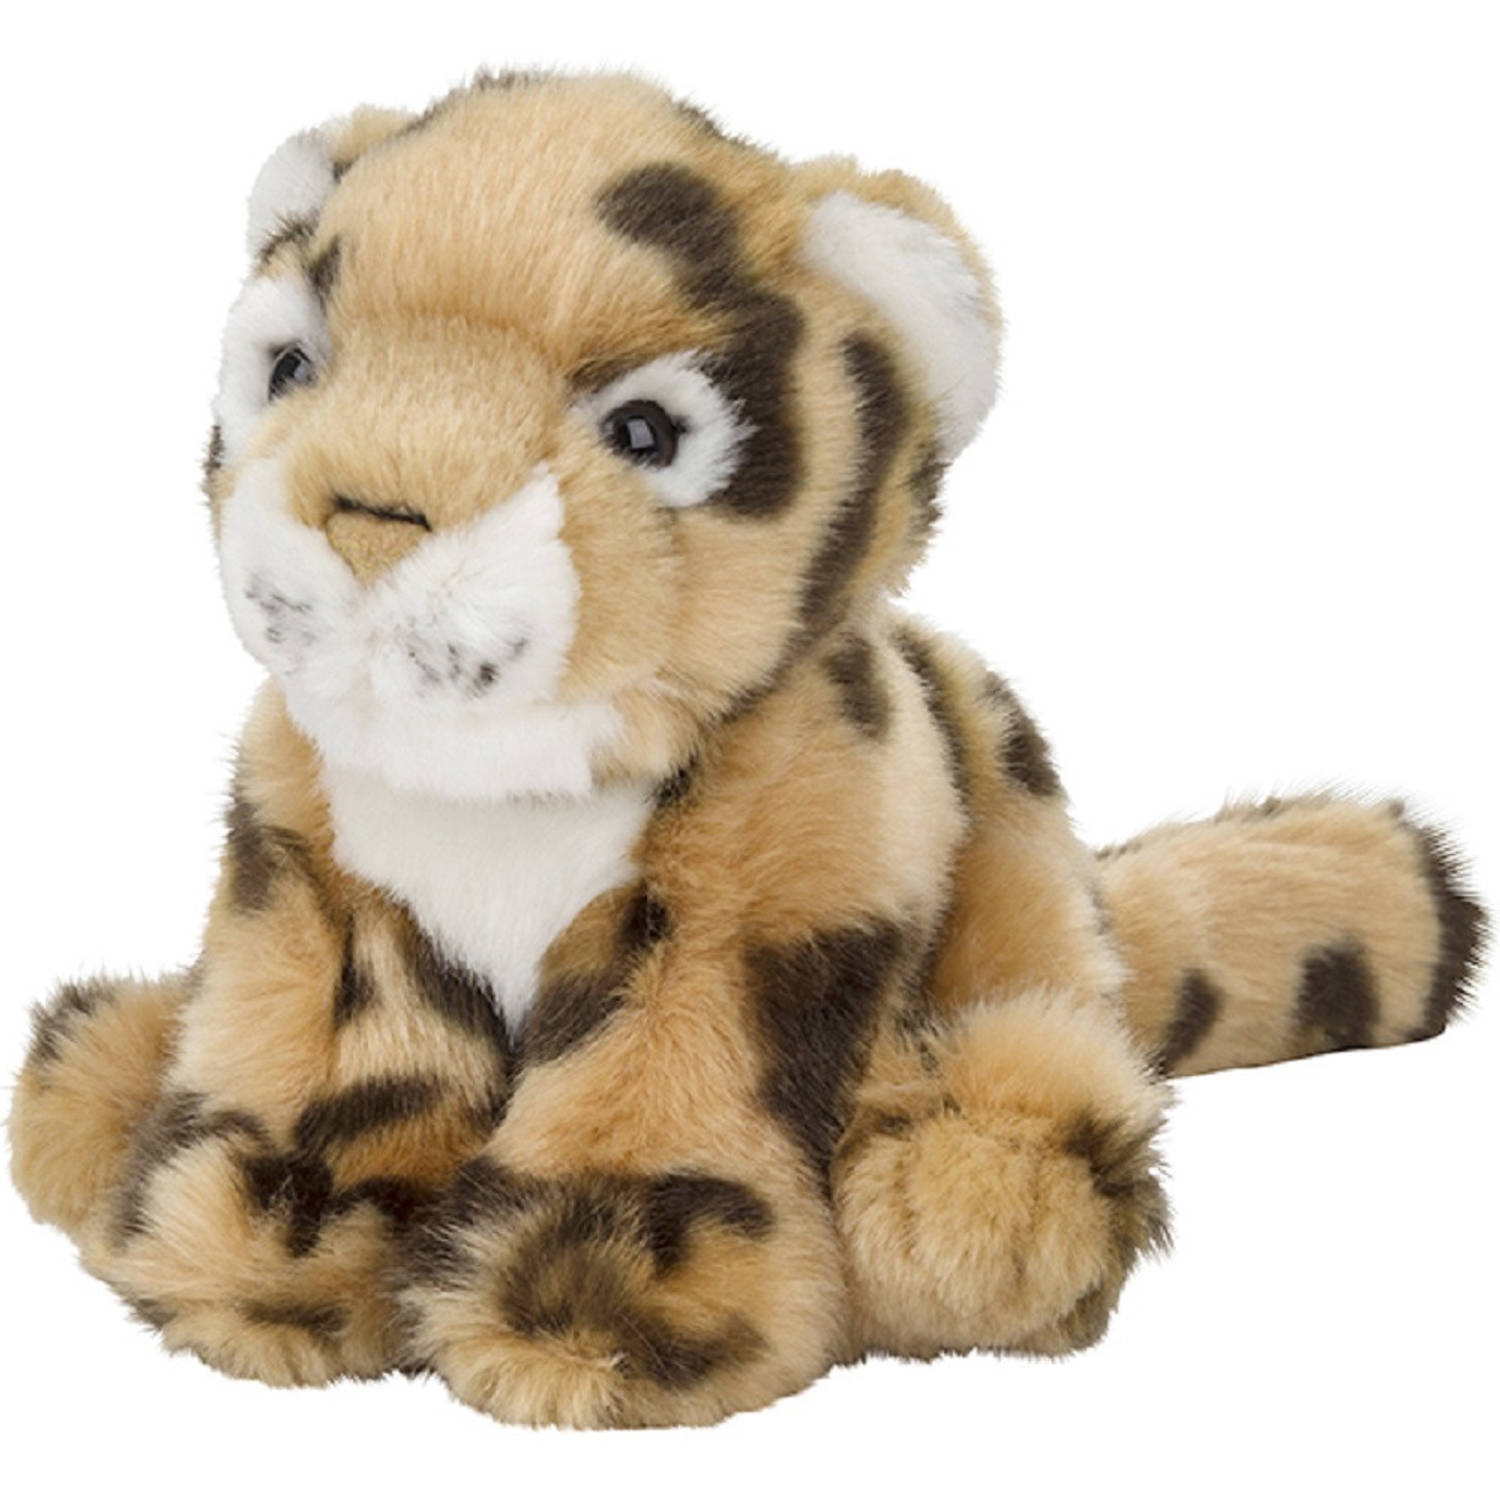 Pluche kleine luipaard knuffel van 15 cm - Dieren speelgoed knuffels cadeau - Luipaarden Knuffeldieren